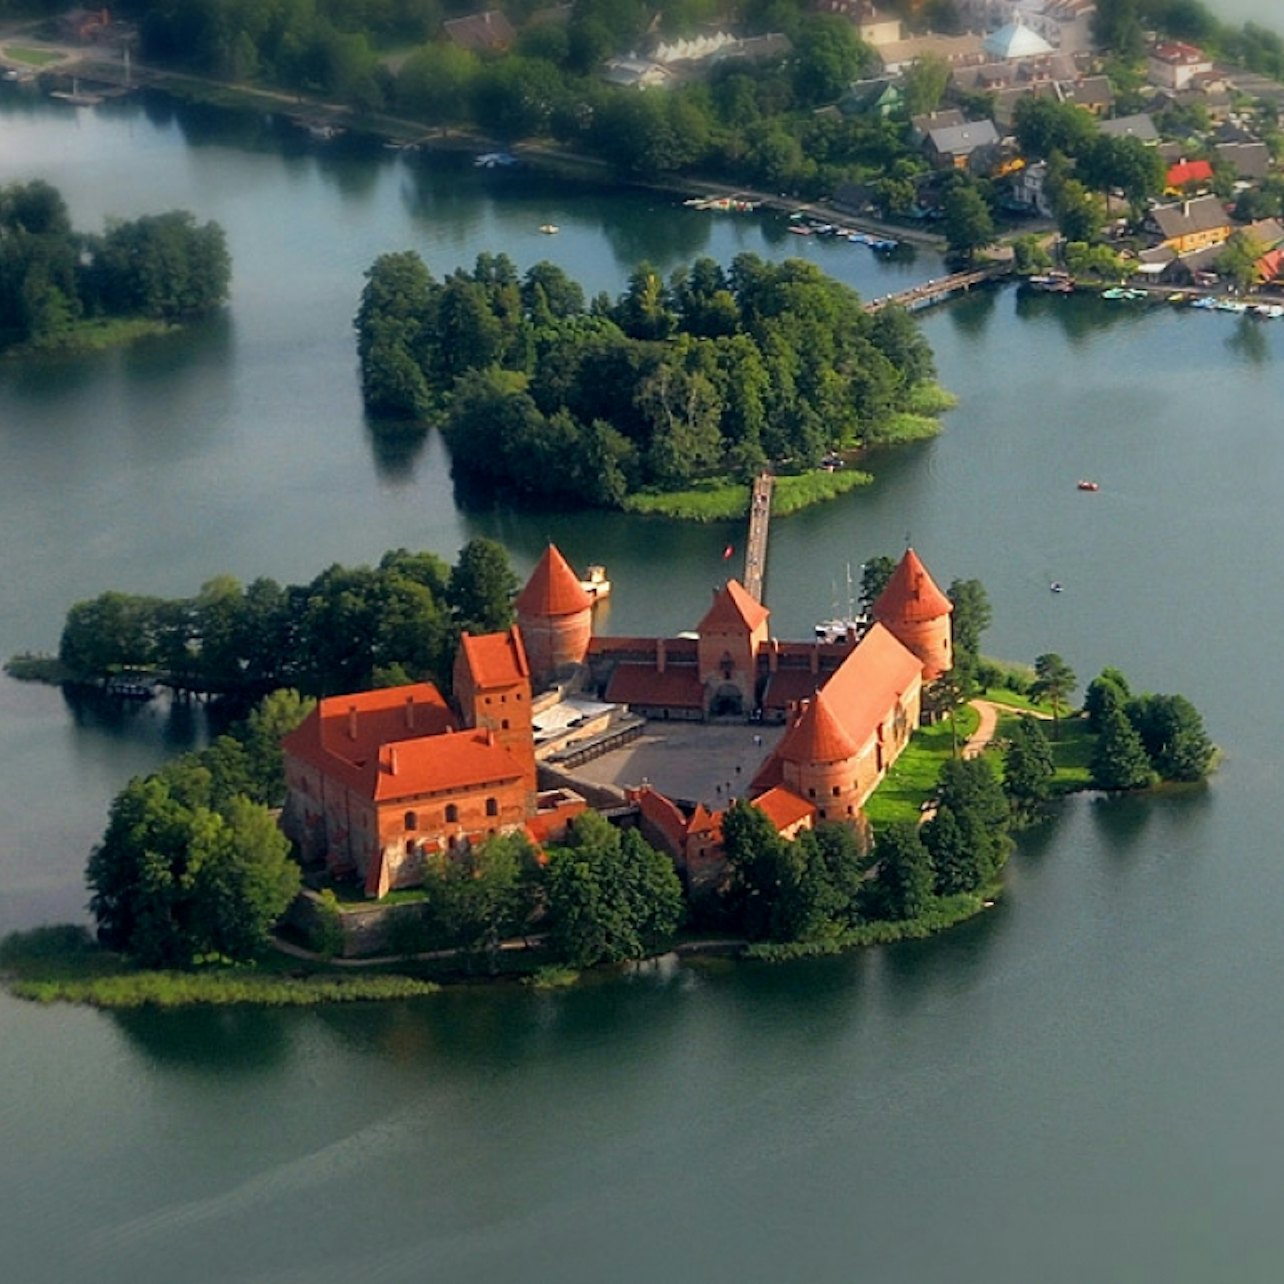 Tour na Ilha de Trakai a partir de Vilnius + entrada no Castelo de Trakai - Acomodações em Vilnius